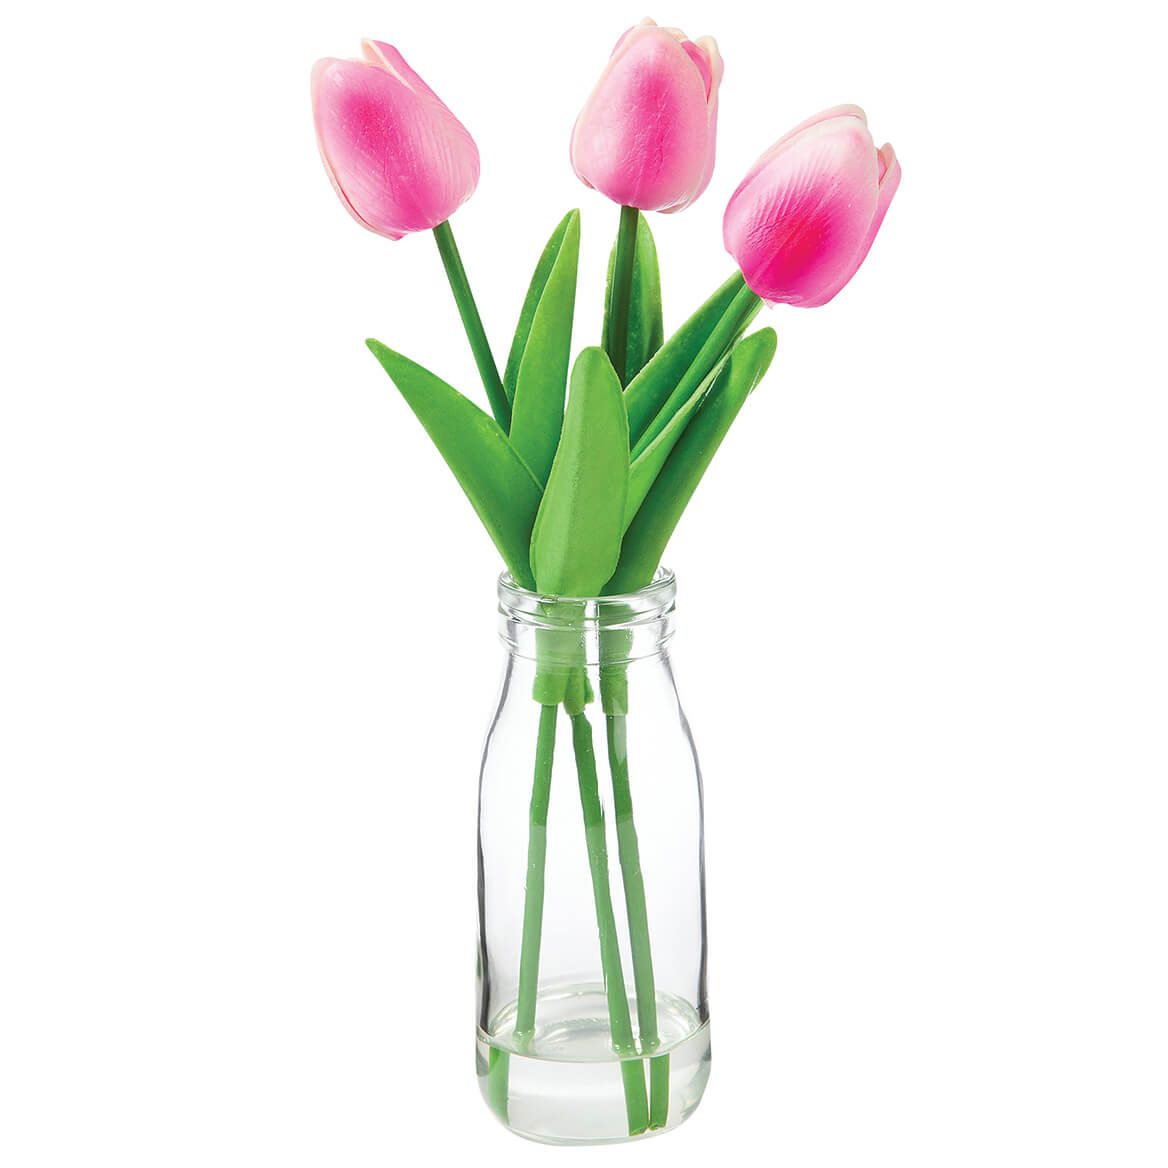 Tulips In Glass Vase by OakRidge™ + '-' + 376808